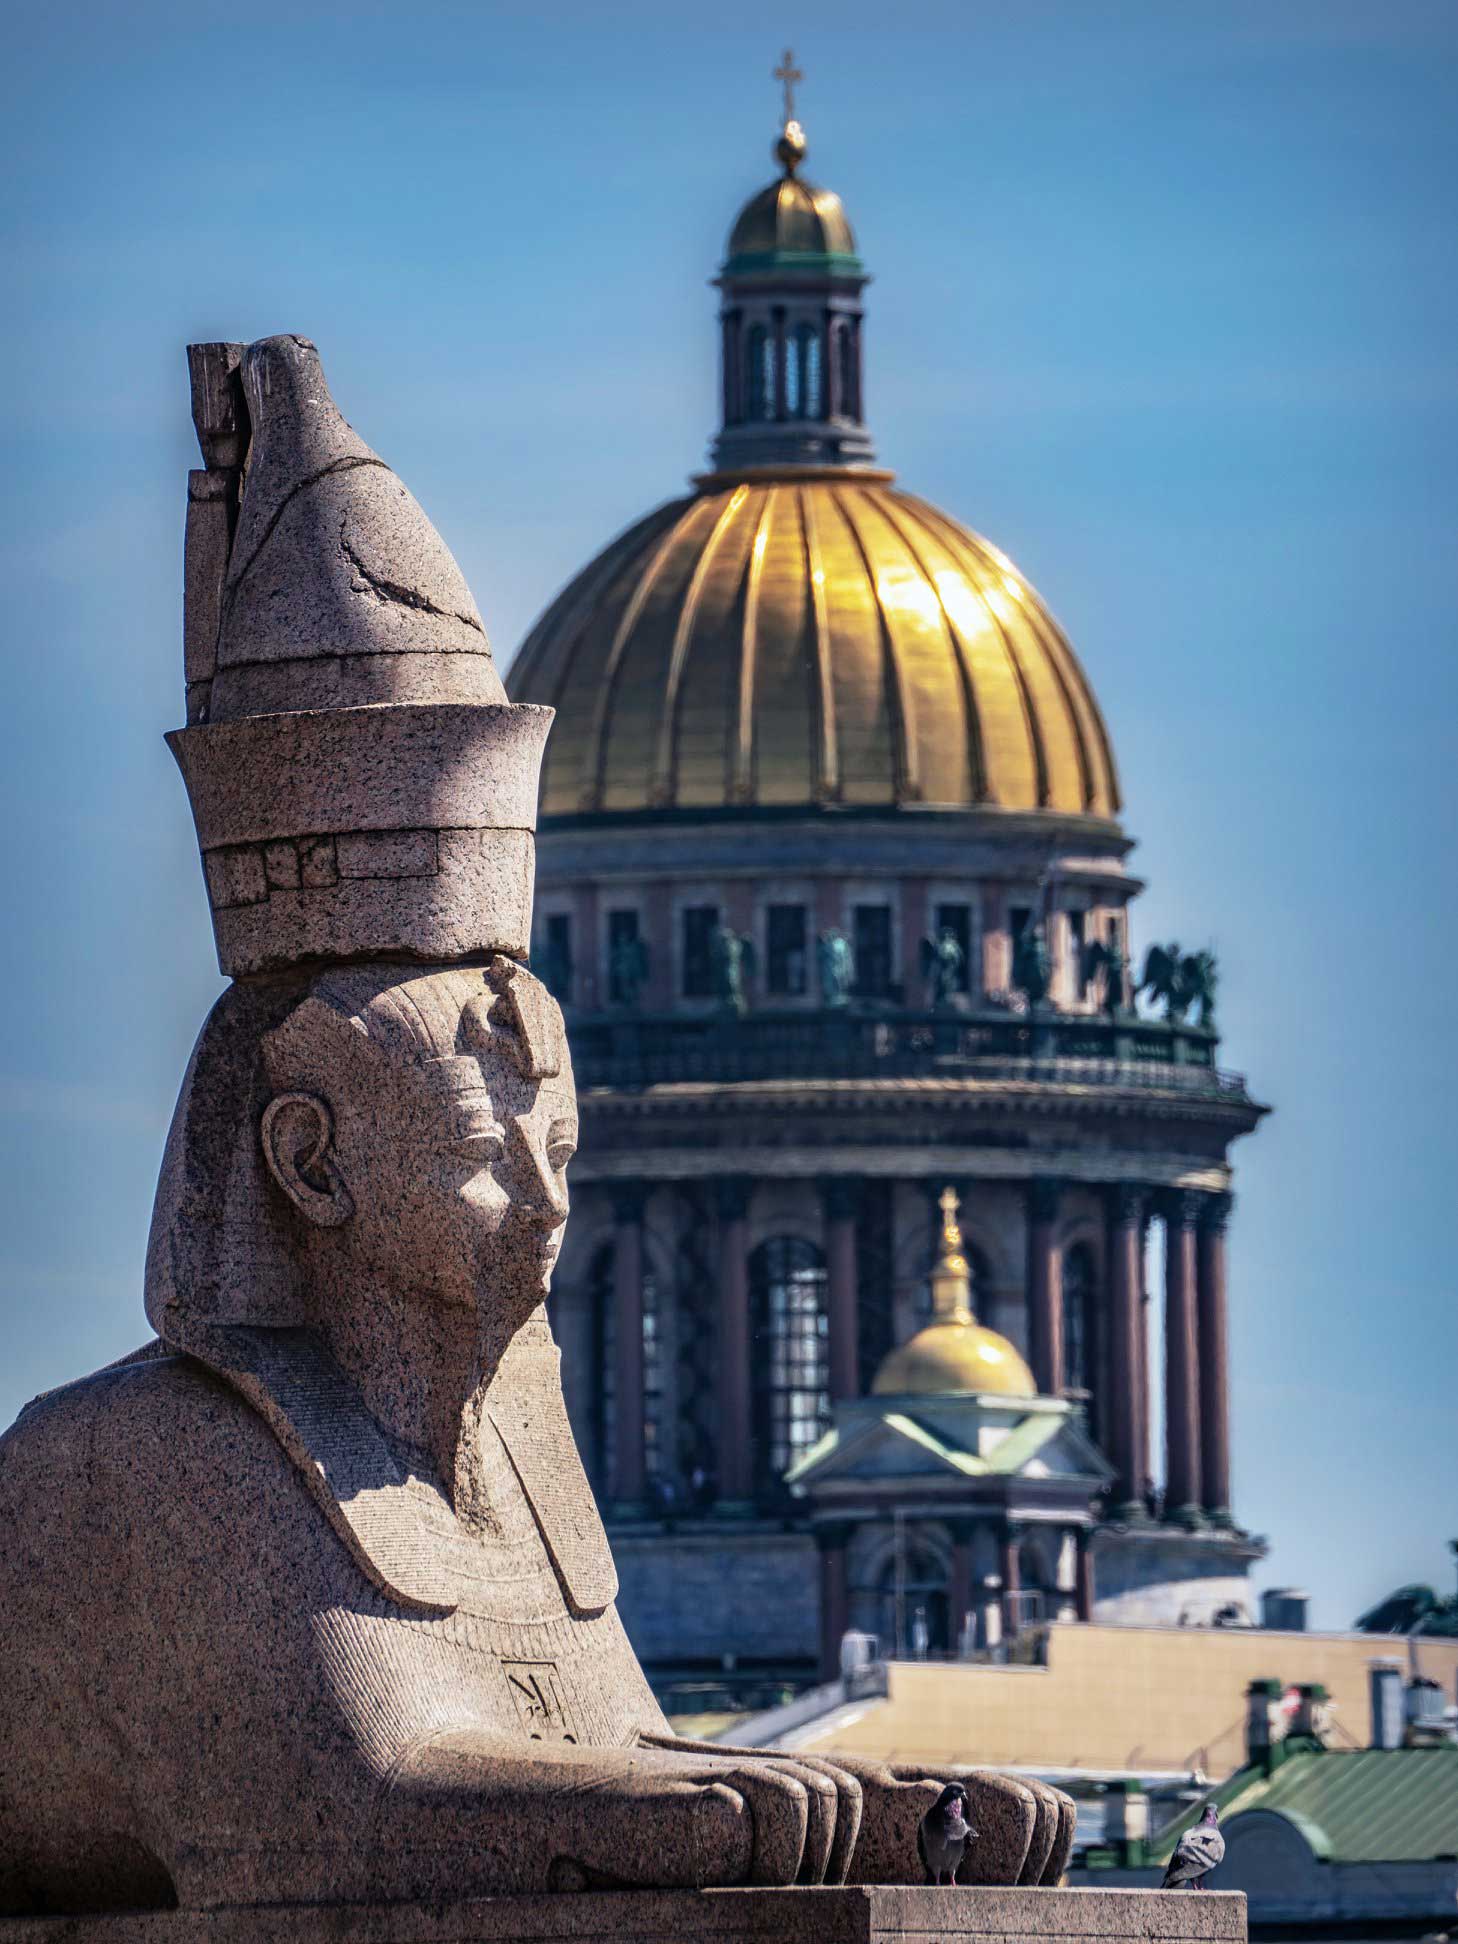 Sphinxes guard St. Petersburg